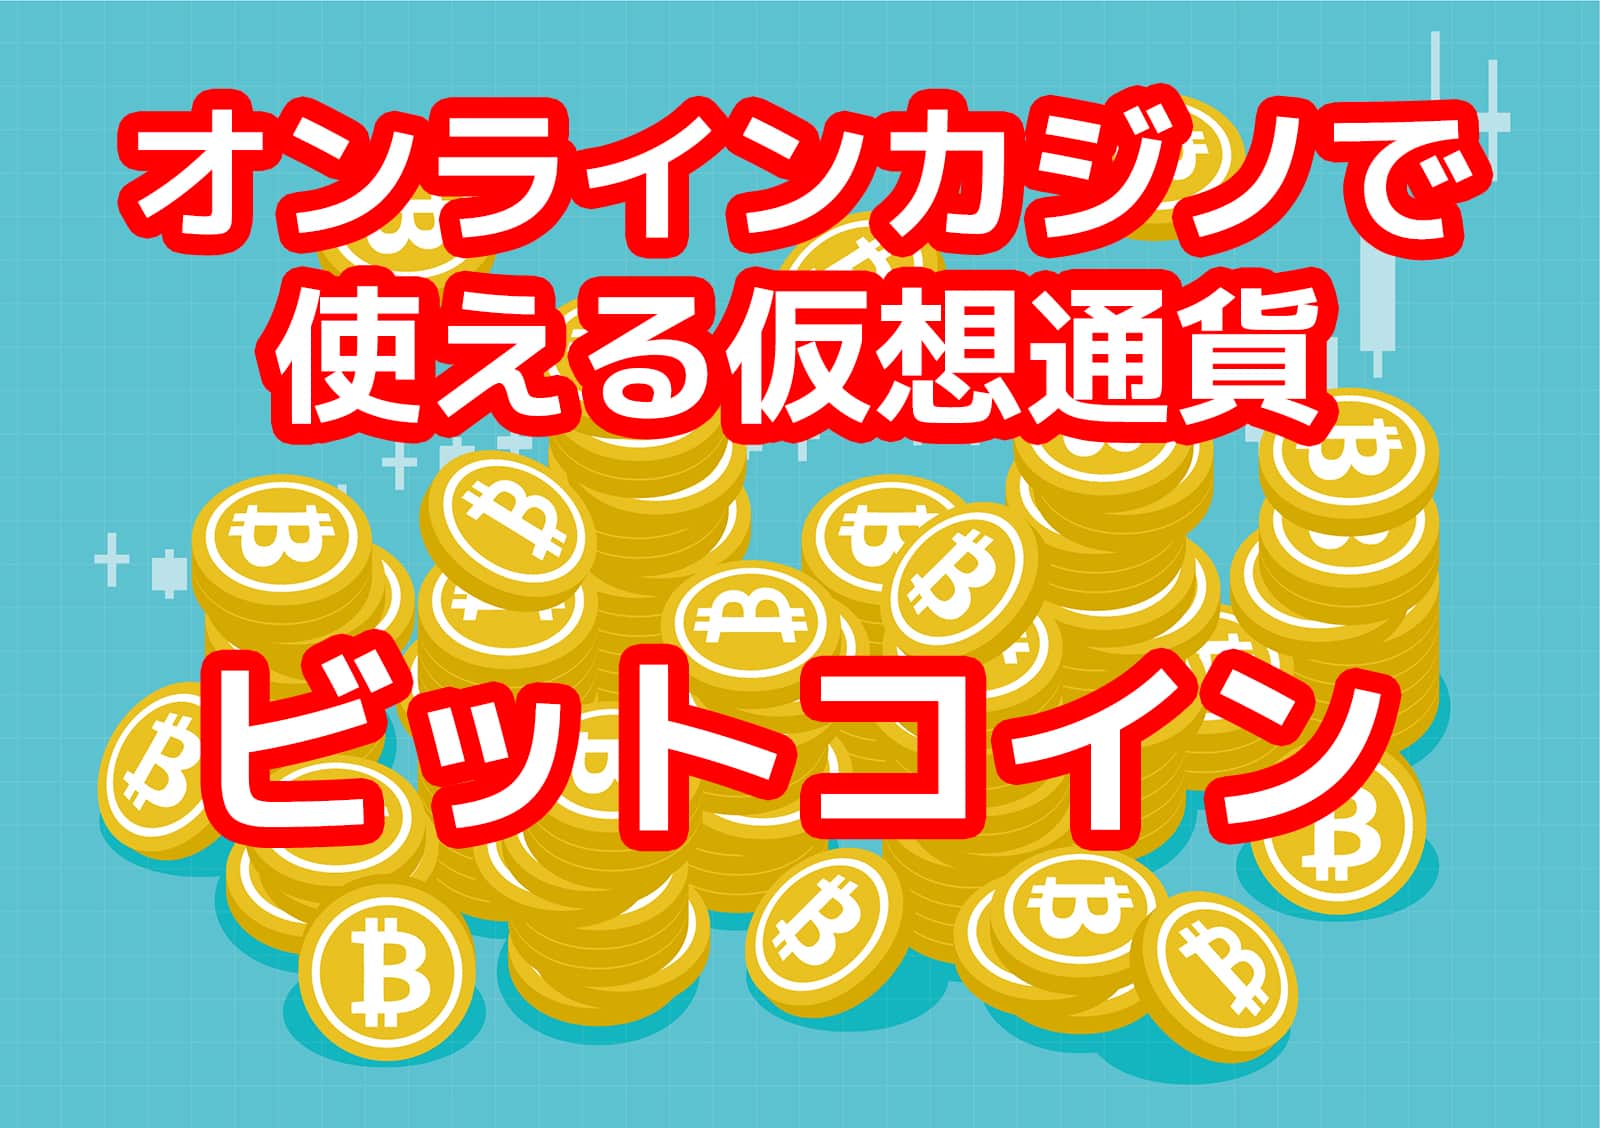 オンラインカジノで使える仮想通貨:ビットコイン